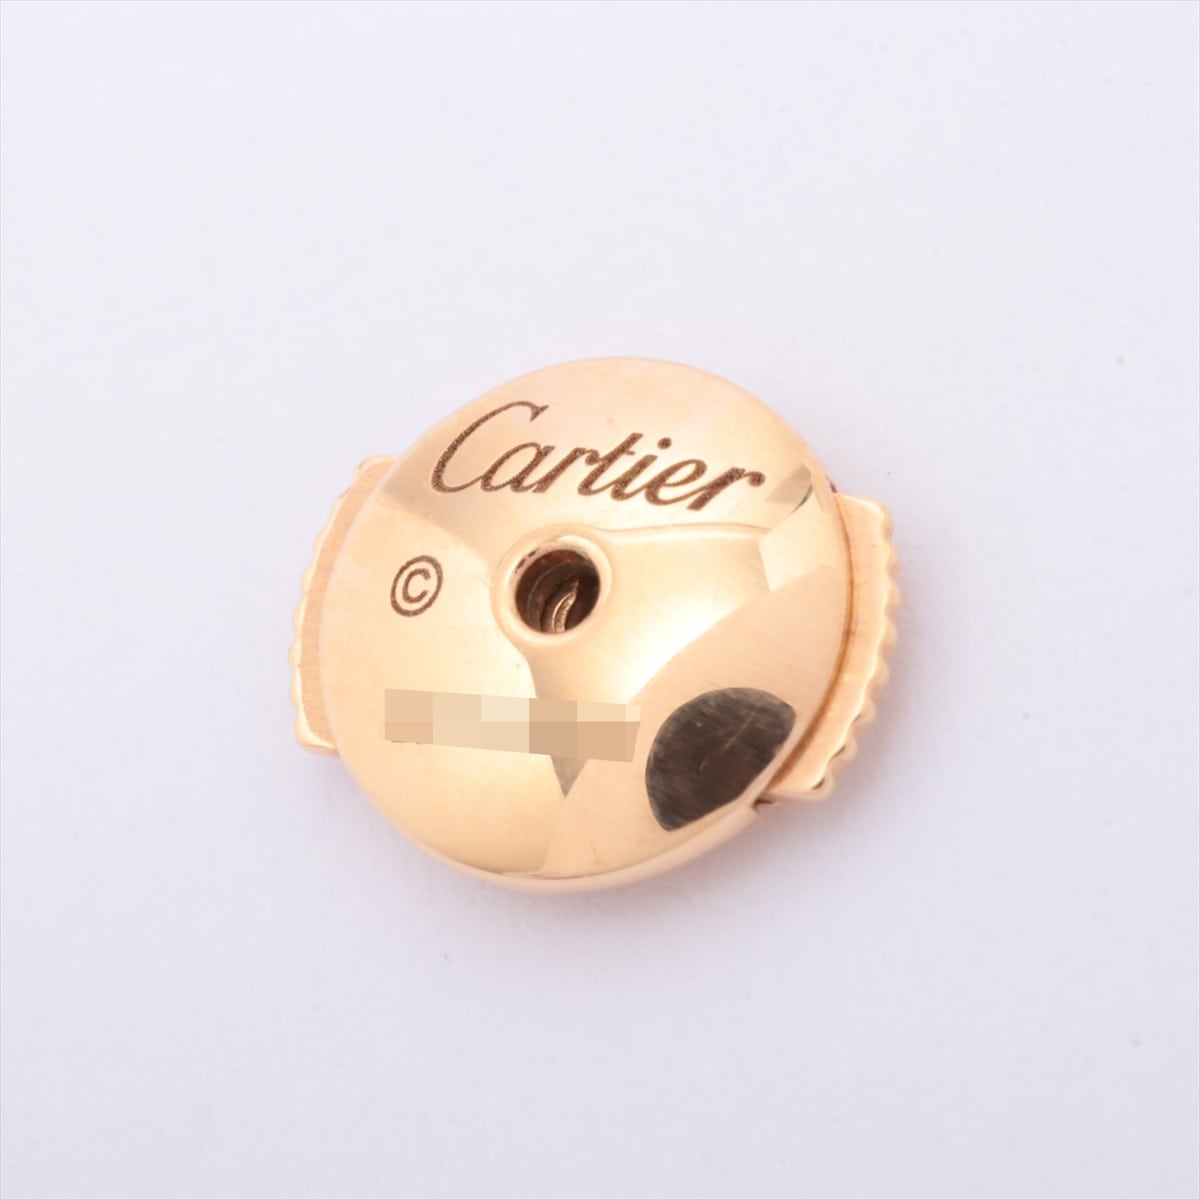 Cartier Safir Léger Doo Cartier Pink sapphire Piercing jewelry 750(PG) 1.9g